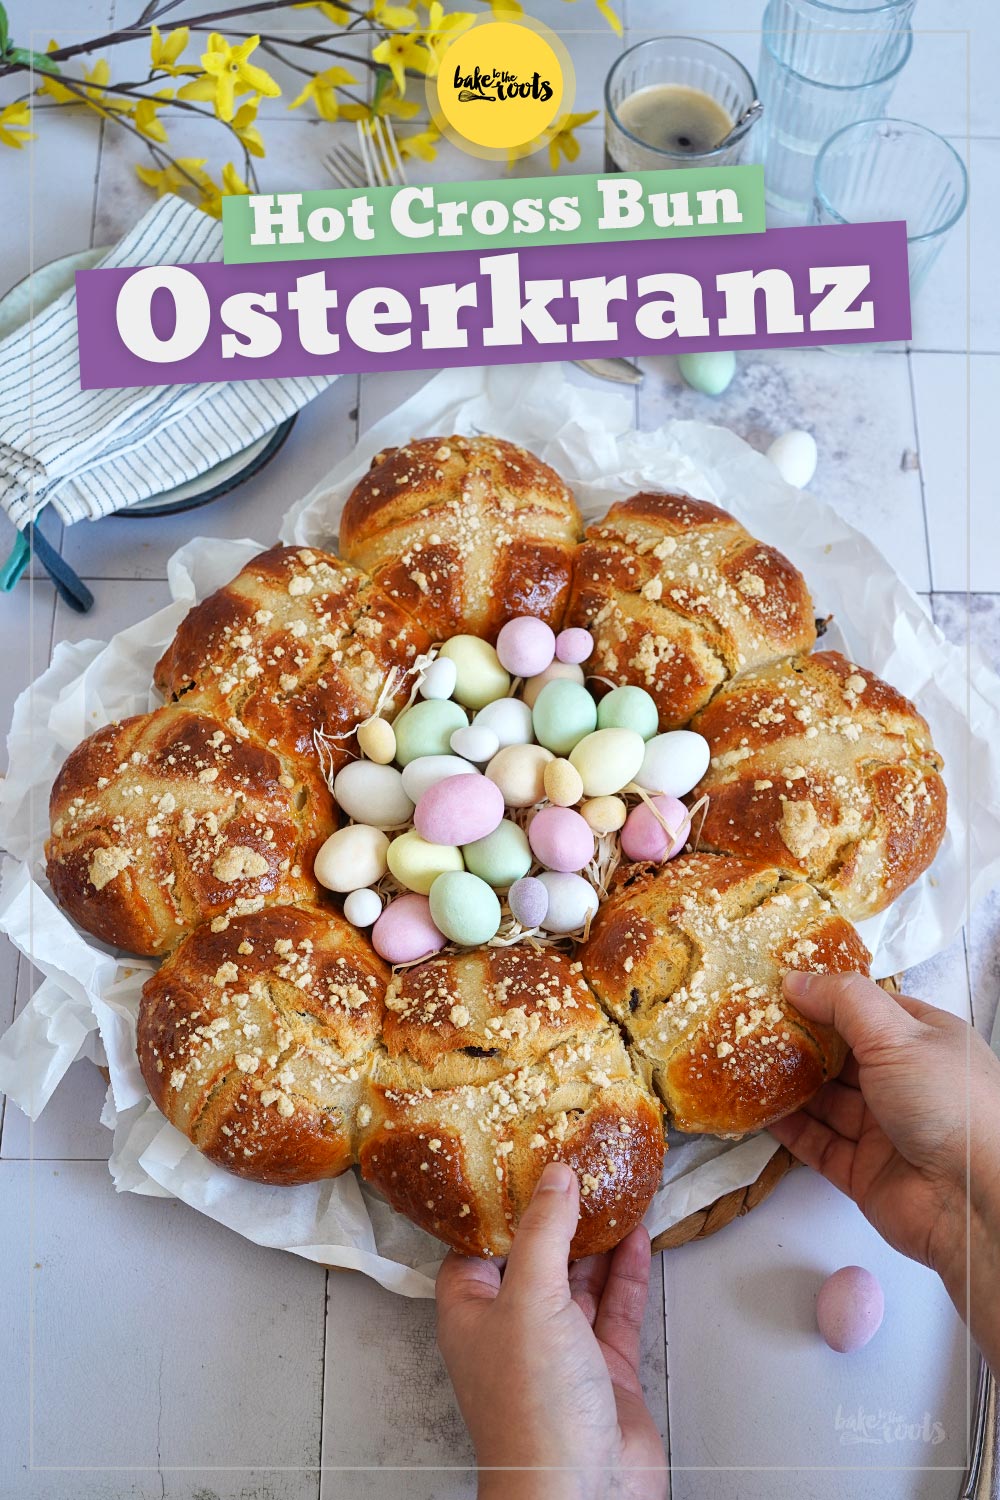 Hot Cross Bun Osterkranz| Bake to the roots